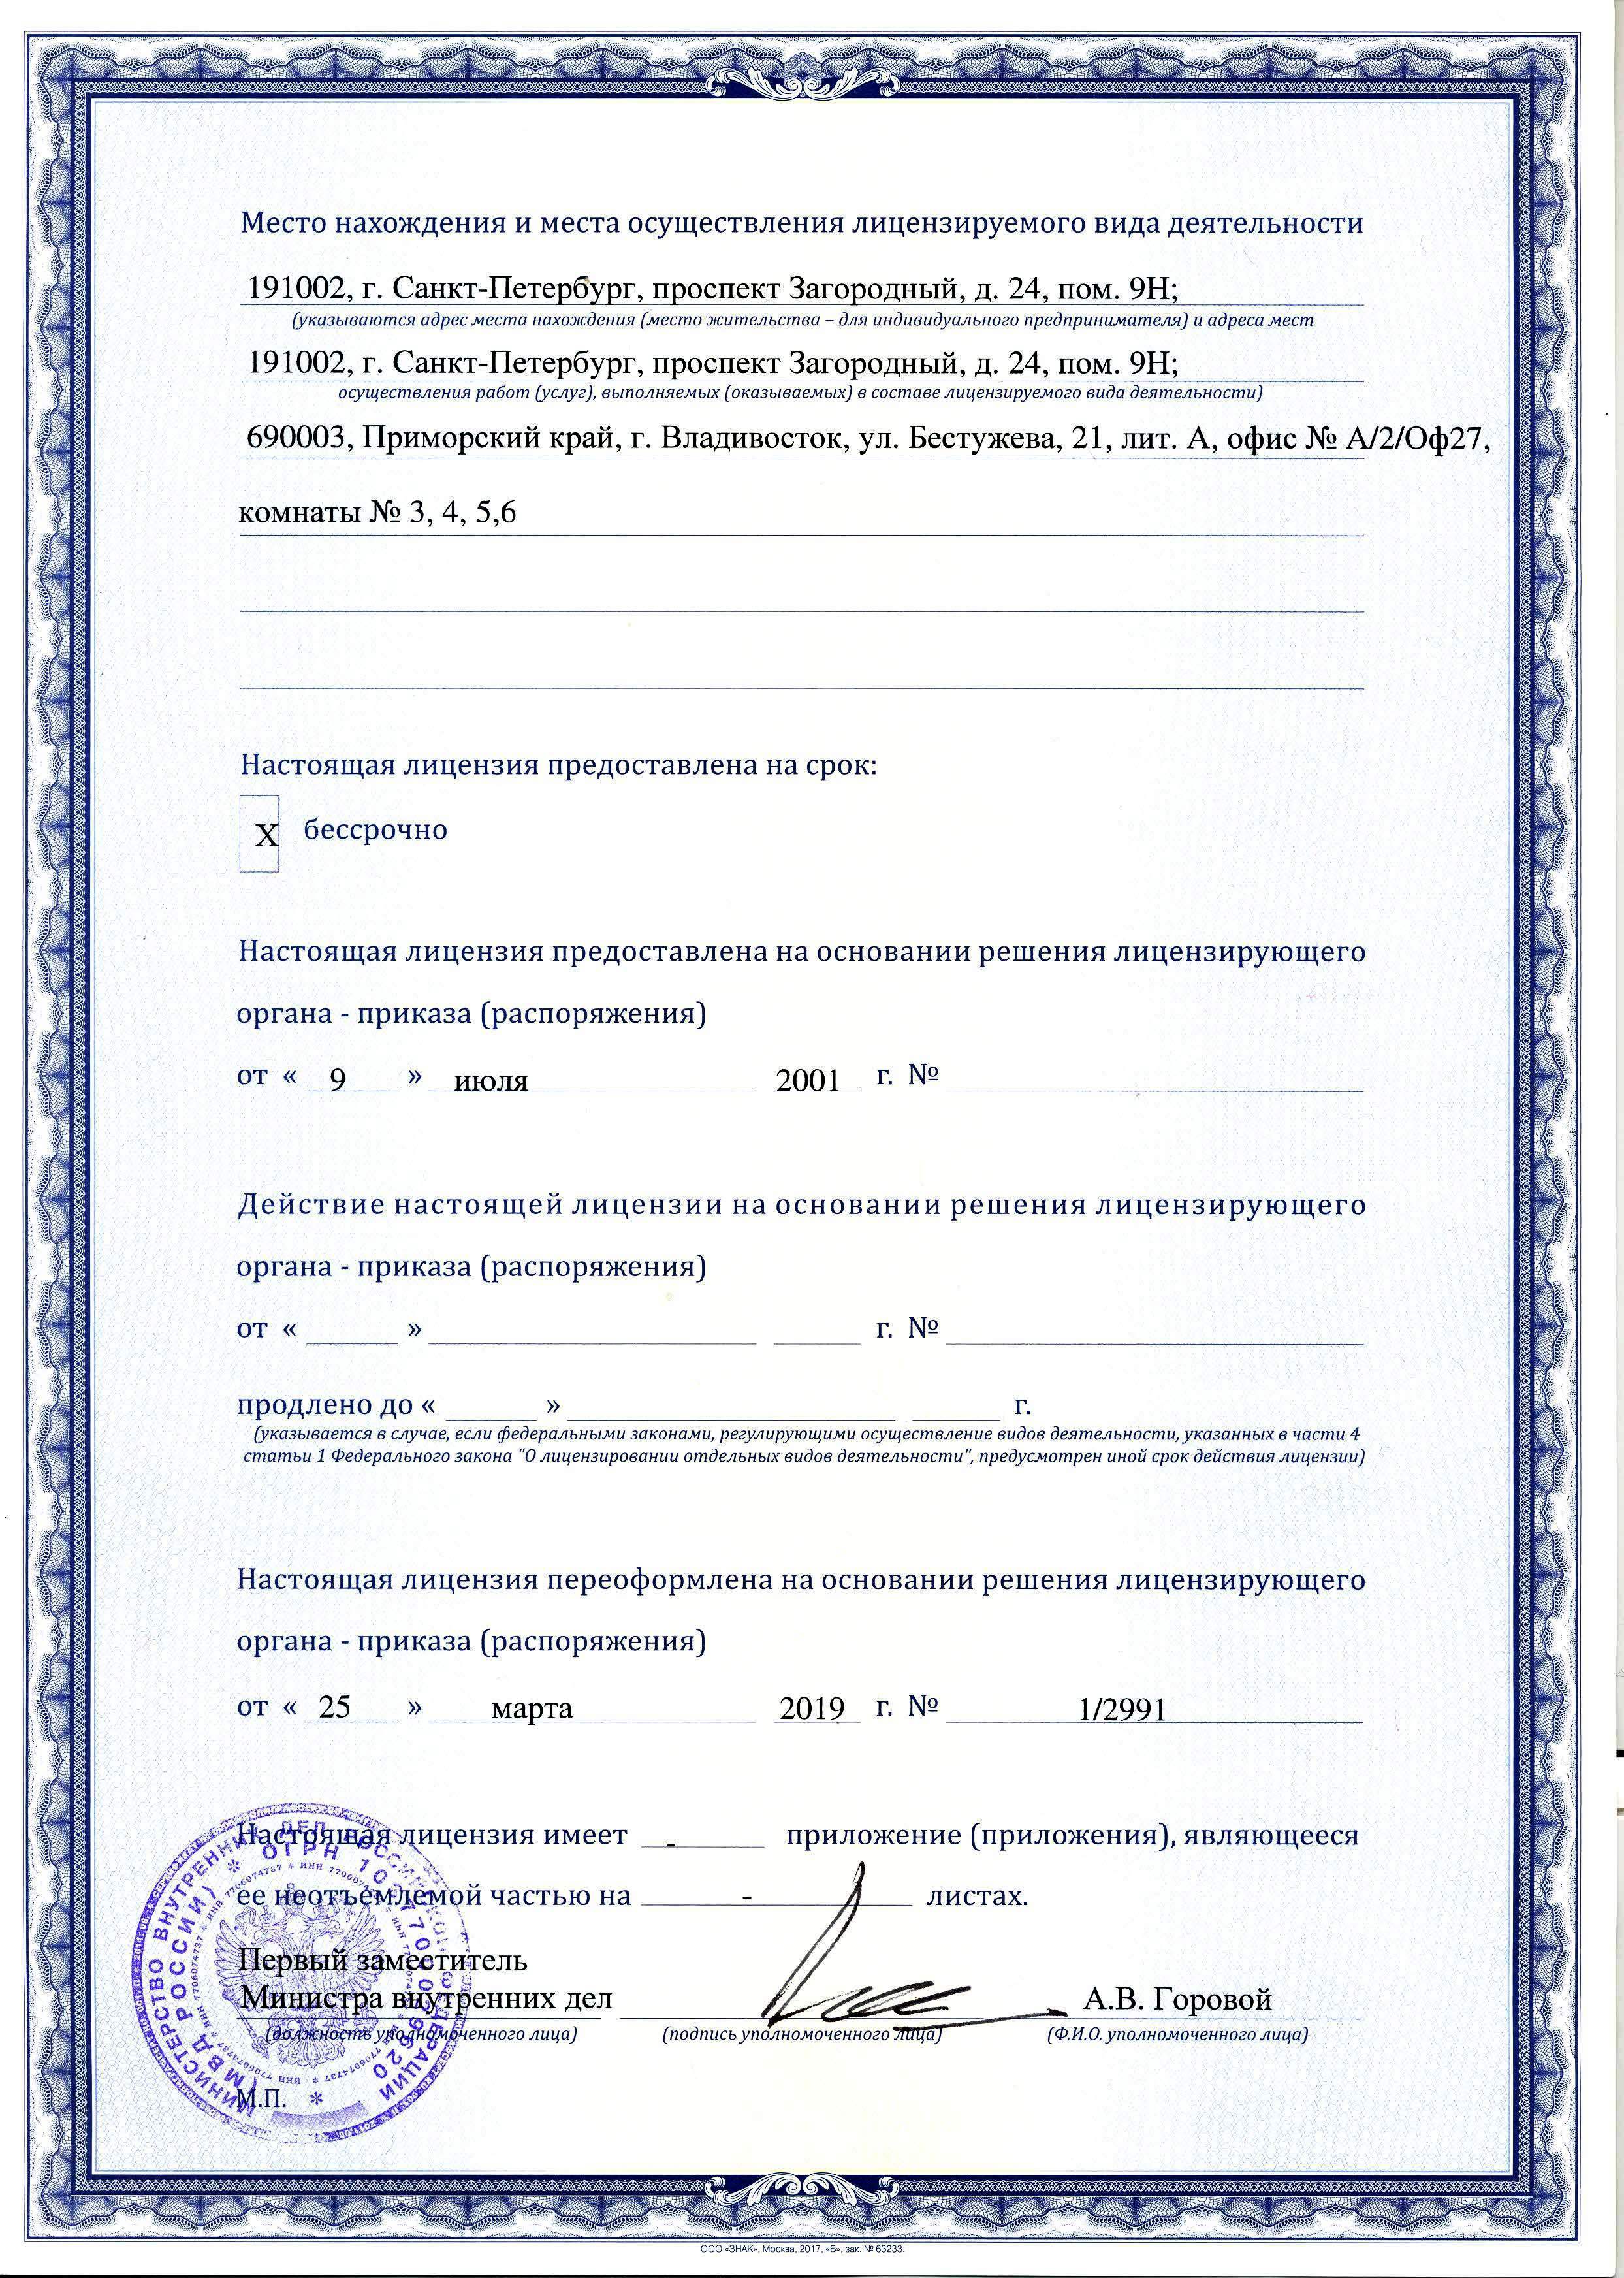 BSM - Лицензии и сертификаты